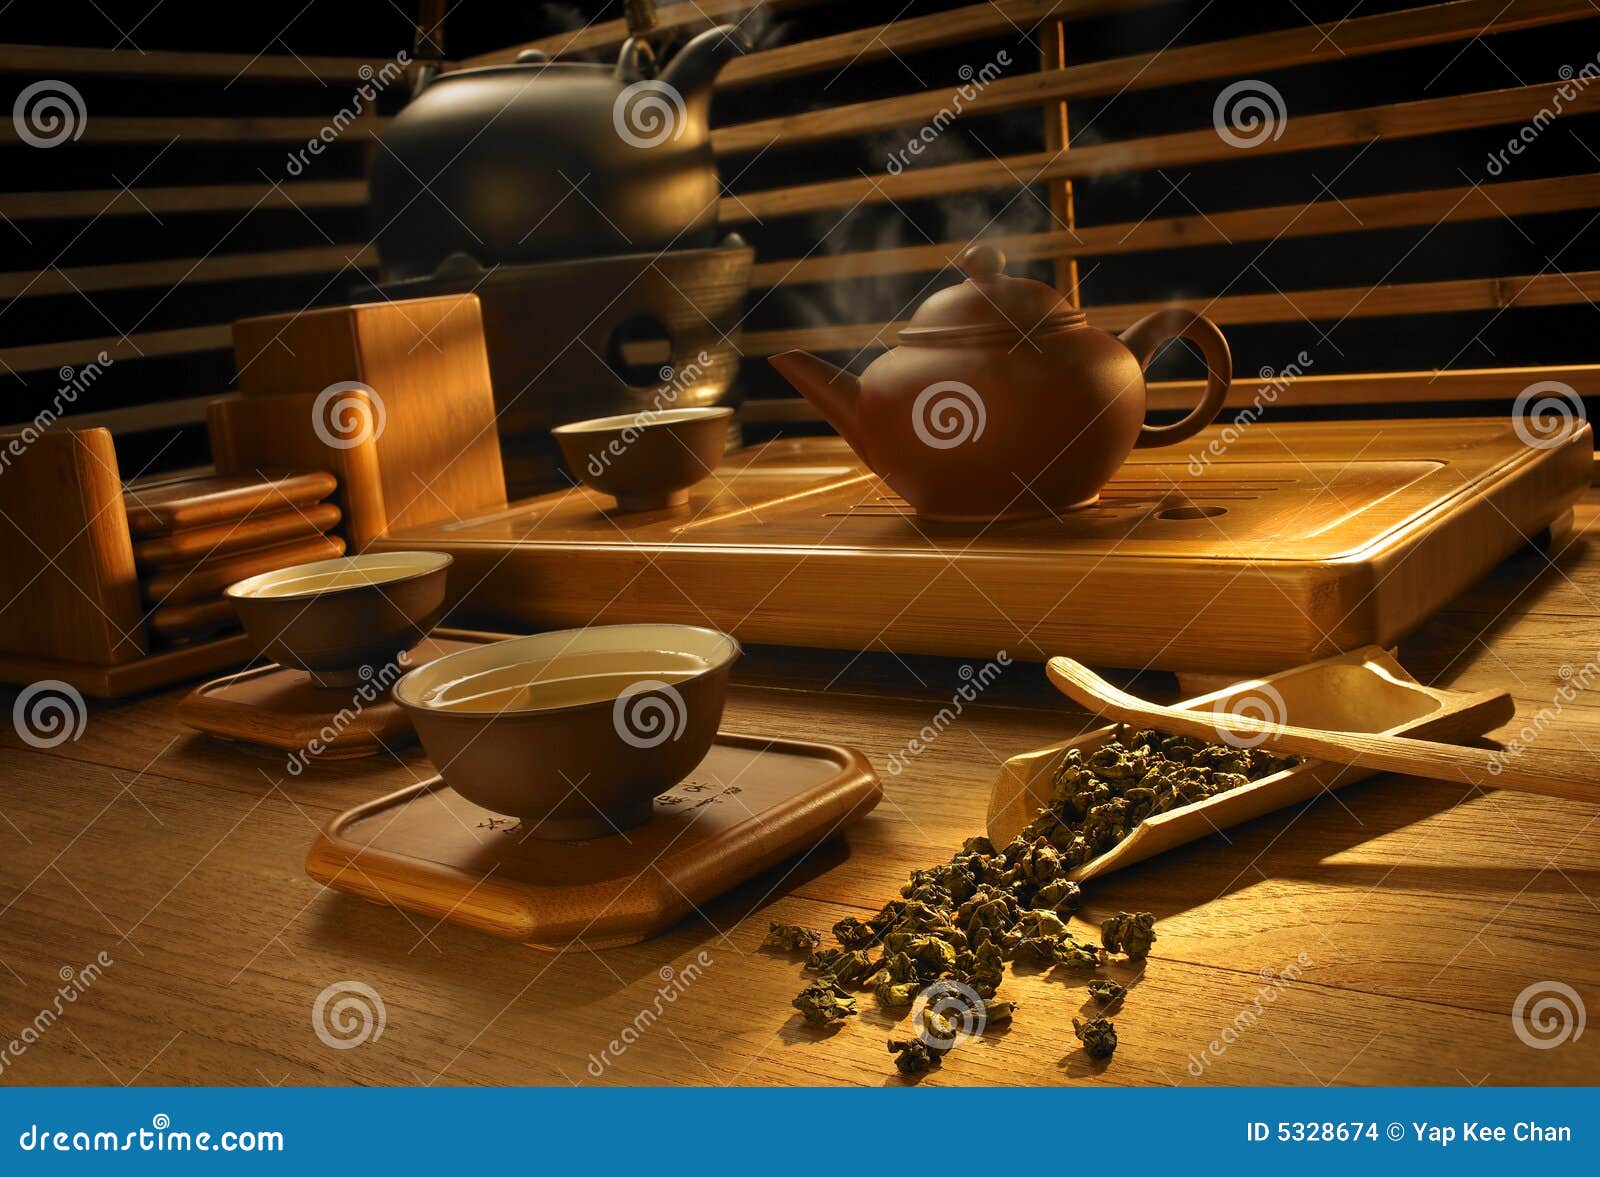 tea making set